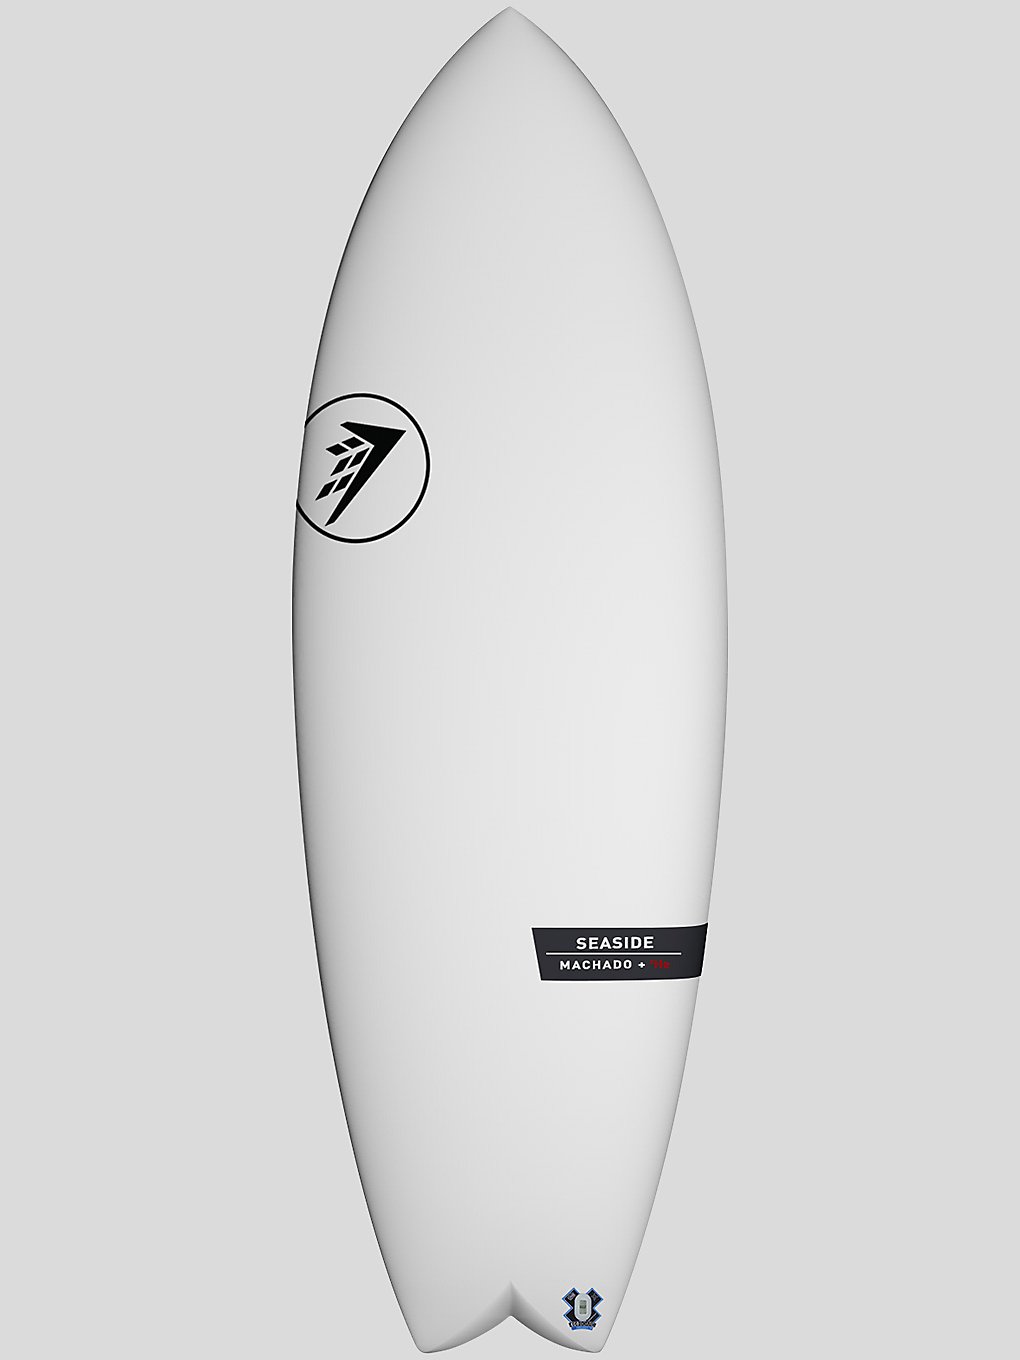 Firewire Seaside 5'10 Surfboard white